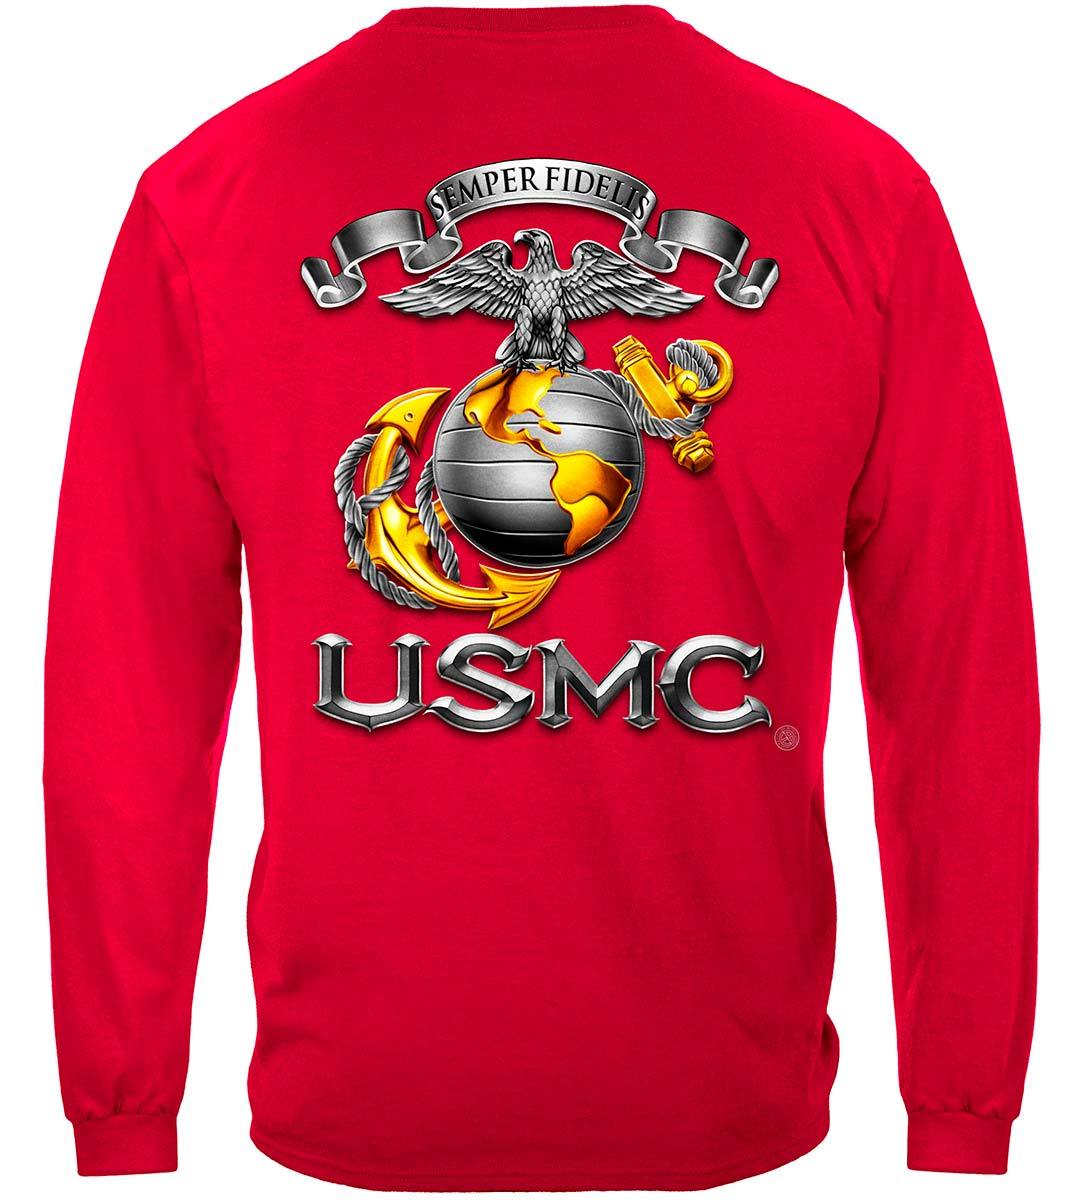 USMC-Semper Fidelis Premium T-Shirt